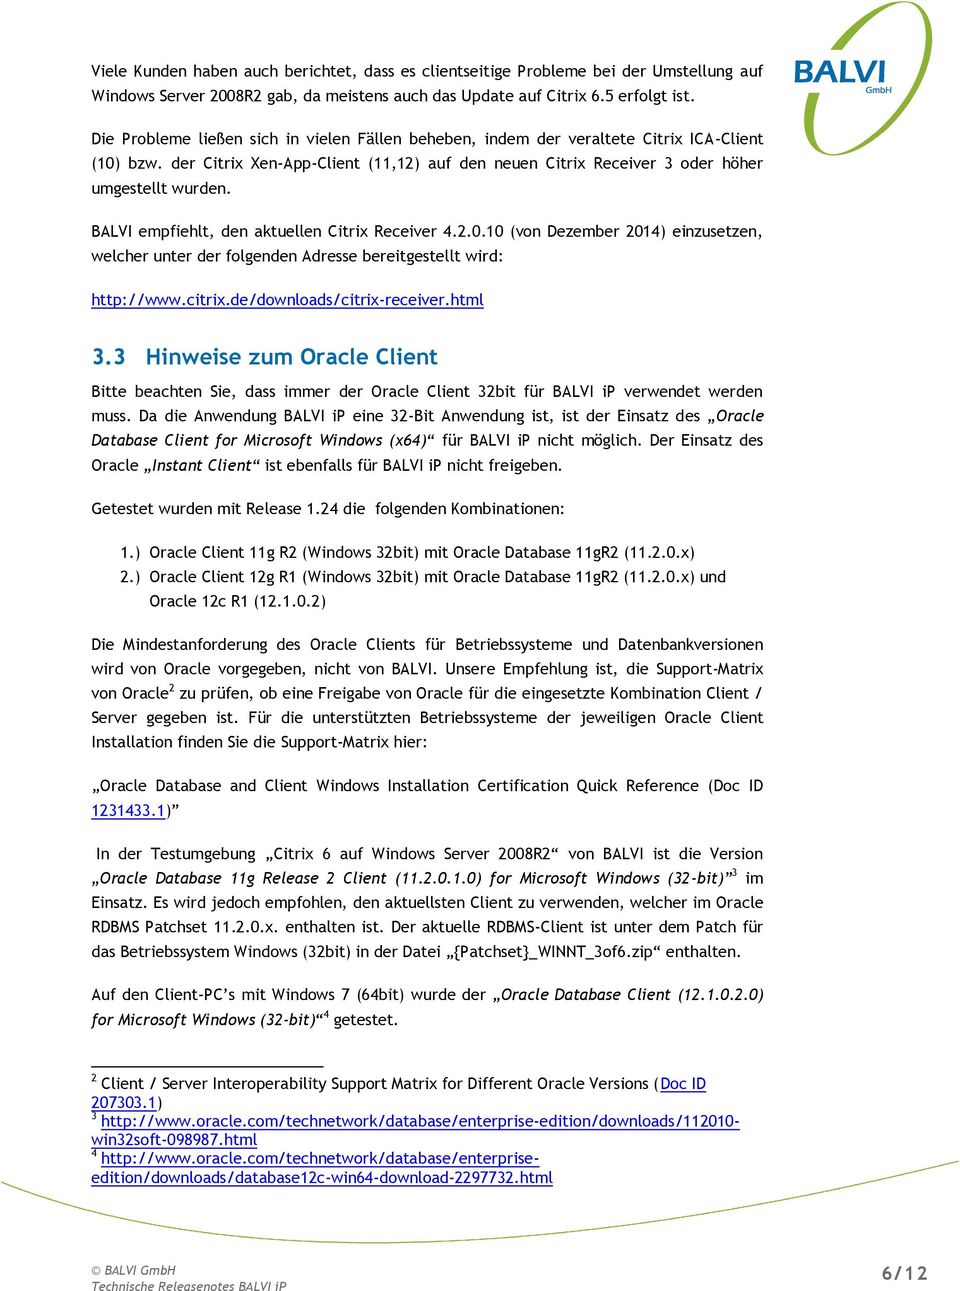 BALVI empfiehlt, den aktuellen Citrix Receiver 4.2.0.10 (von Dezember 2014) einzusetzen, welcher unter der folgenden Adresse bereitgestellt wird: http://www.citrix.de/downloads/citrix-receiver.html 3.